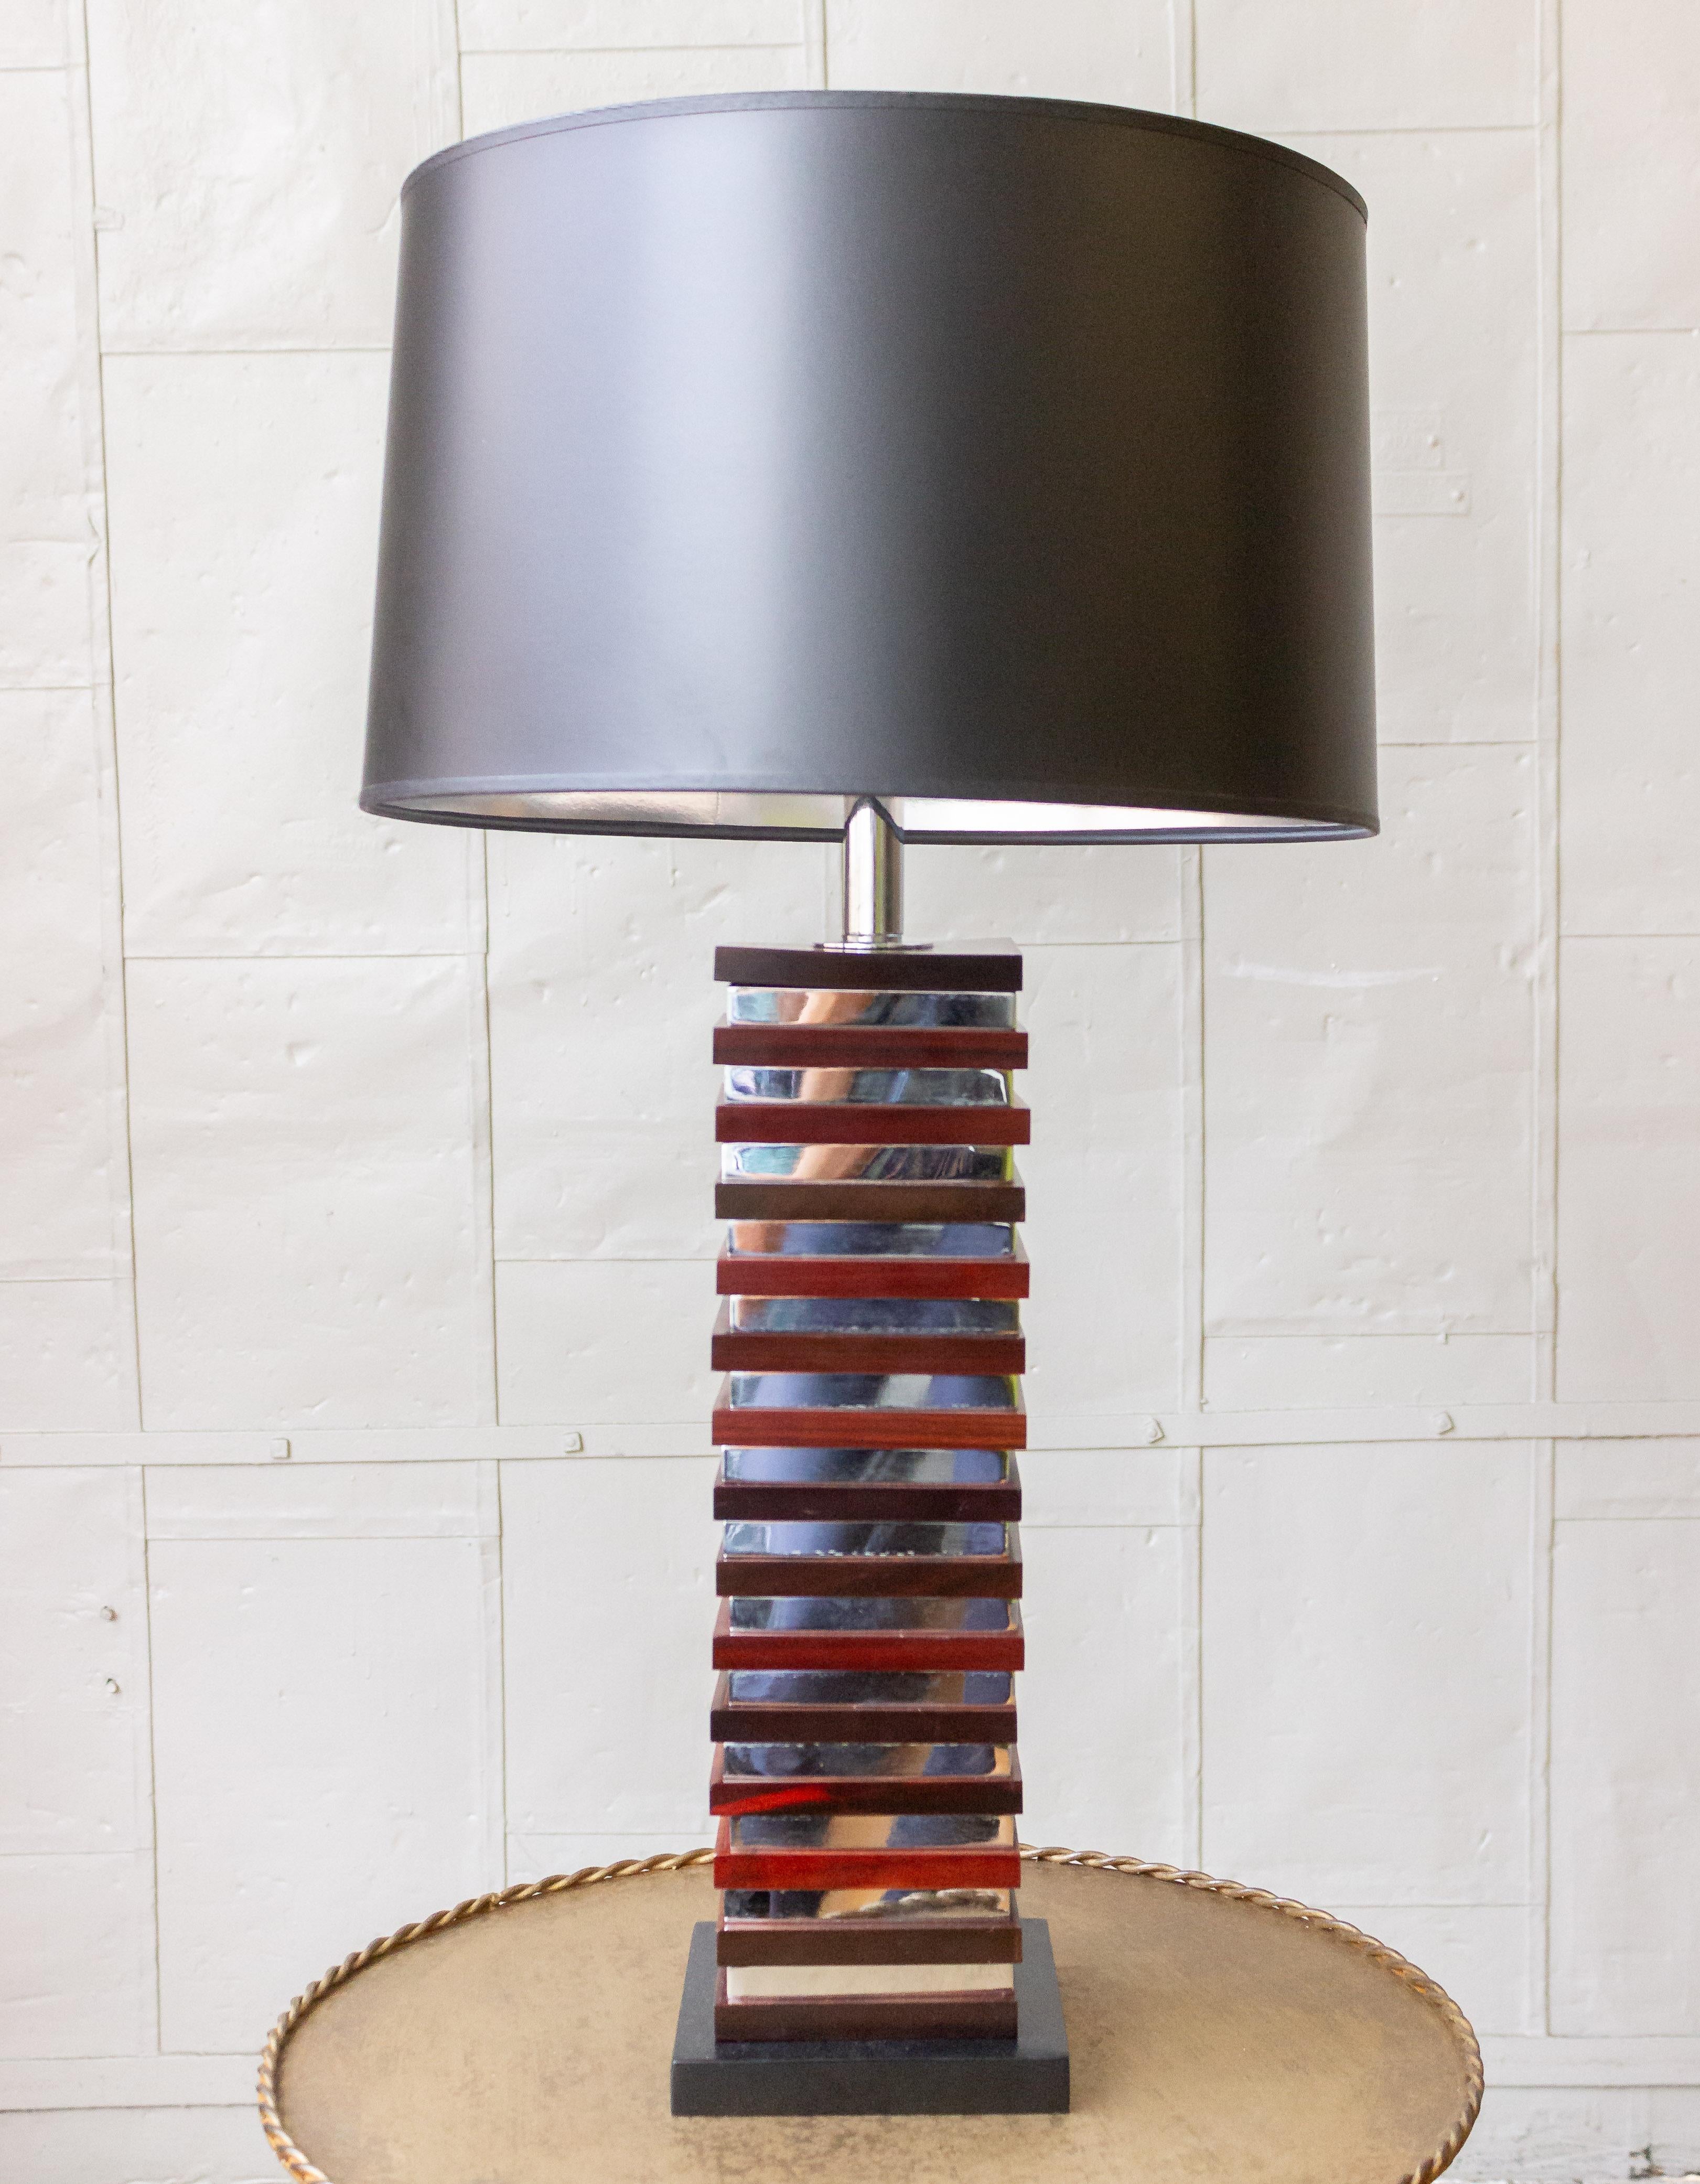 Cette paire inhabituelle de lampes de table françaises des années 1970 de style moderne du milieu du siècle mettra en valeur n'importe quel espace. Ces lampes élégantes présentent une alternance de carrés d'acajou riche et de chrome élégant,